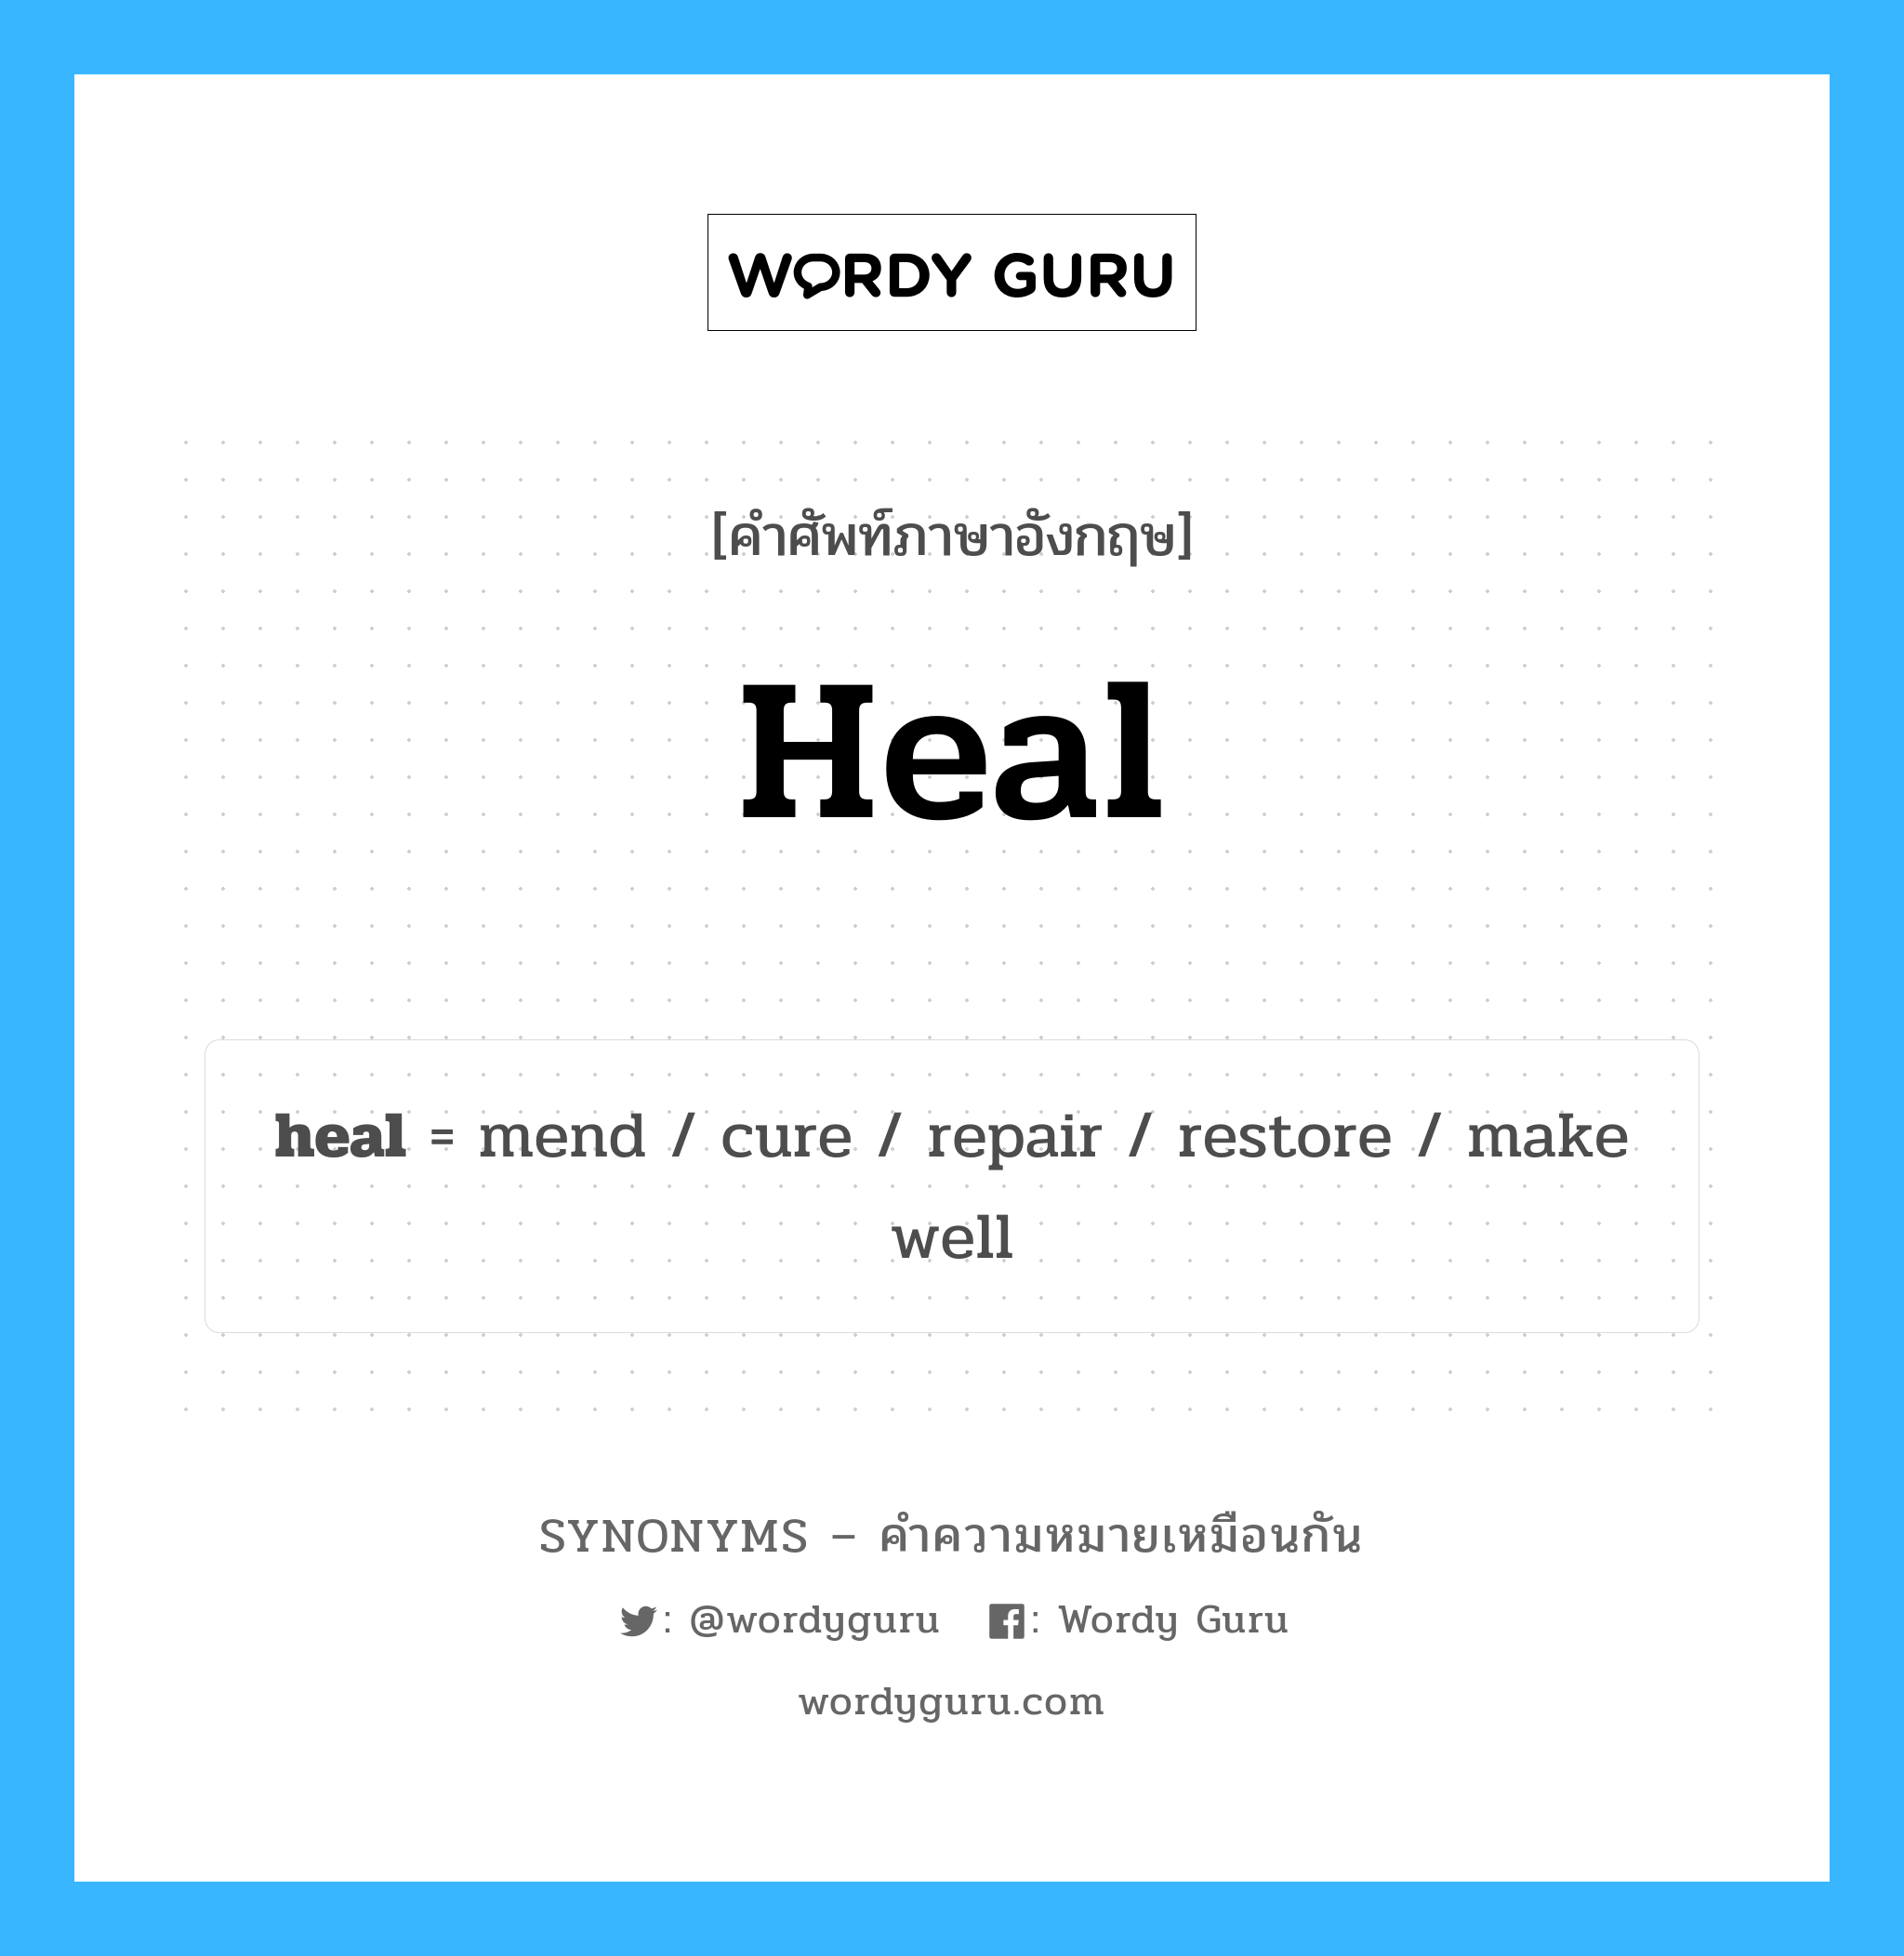 repair เป็นหนึ่งใน fix และมีคำอื่น ๆ อีกดังนี้, คำศัพท์ภาษาอังกฤษ repair ความหมายคล้ายกันกับ heal แปลว่า ซ่อมแซม หมวด heal